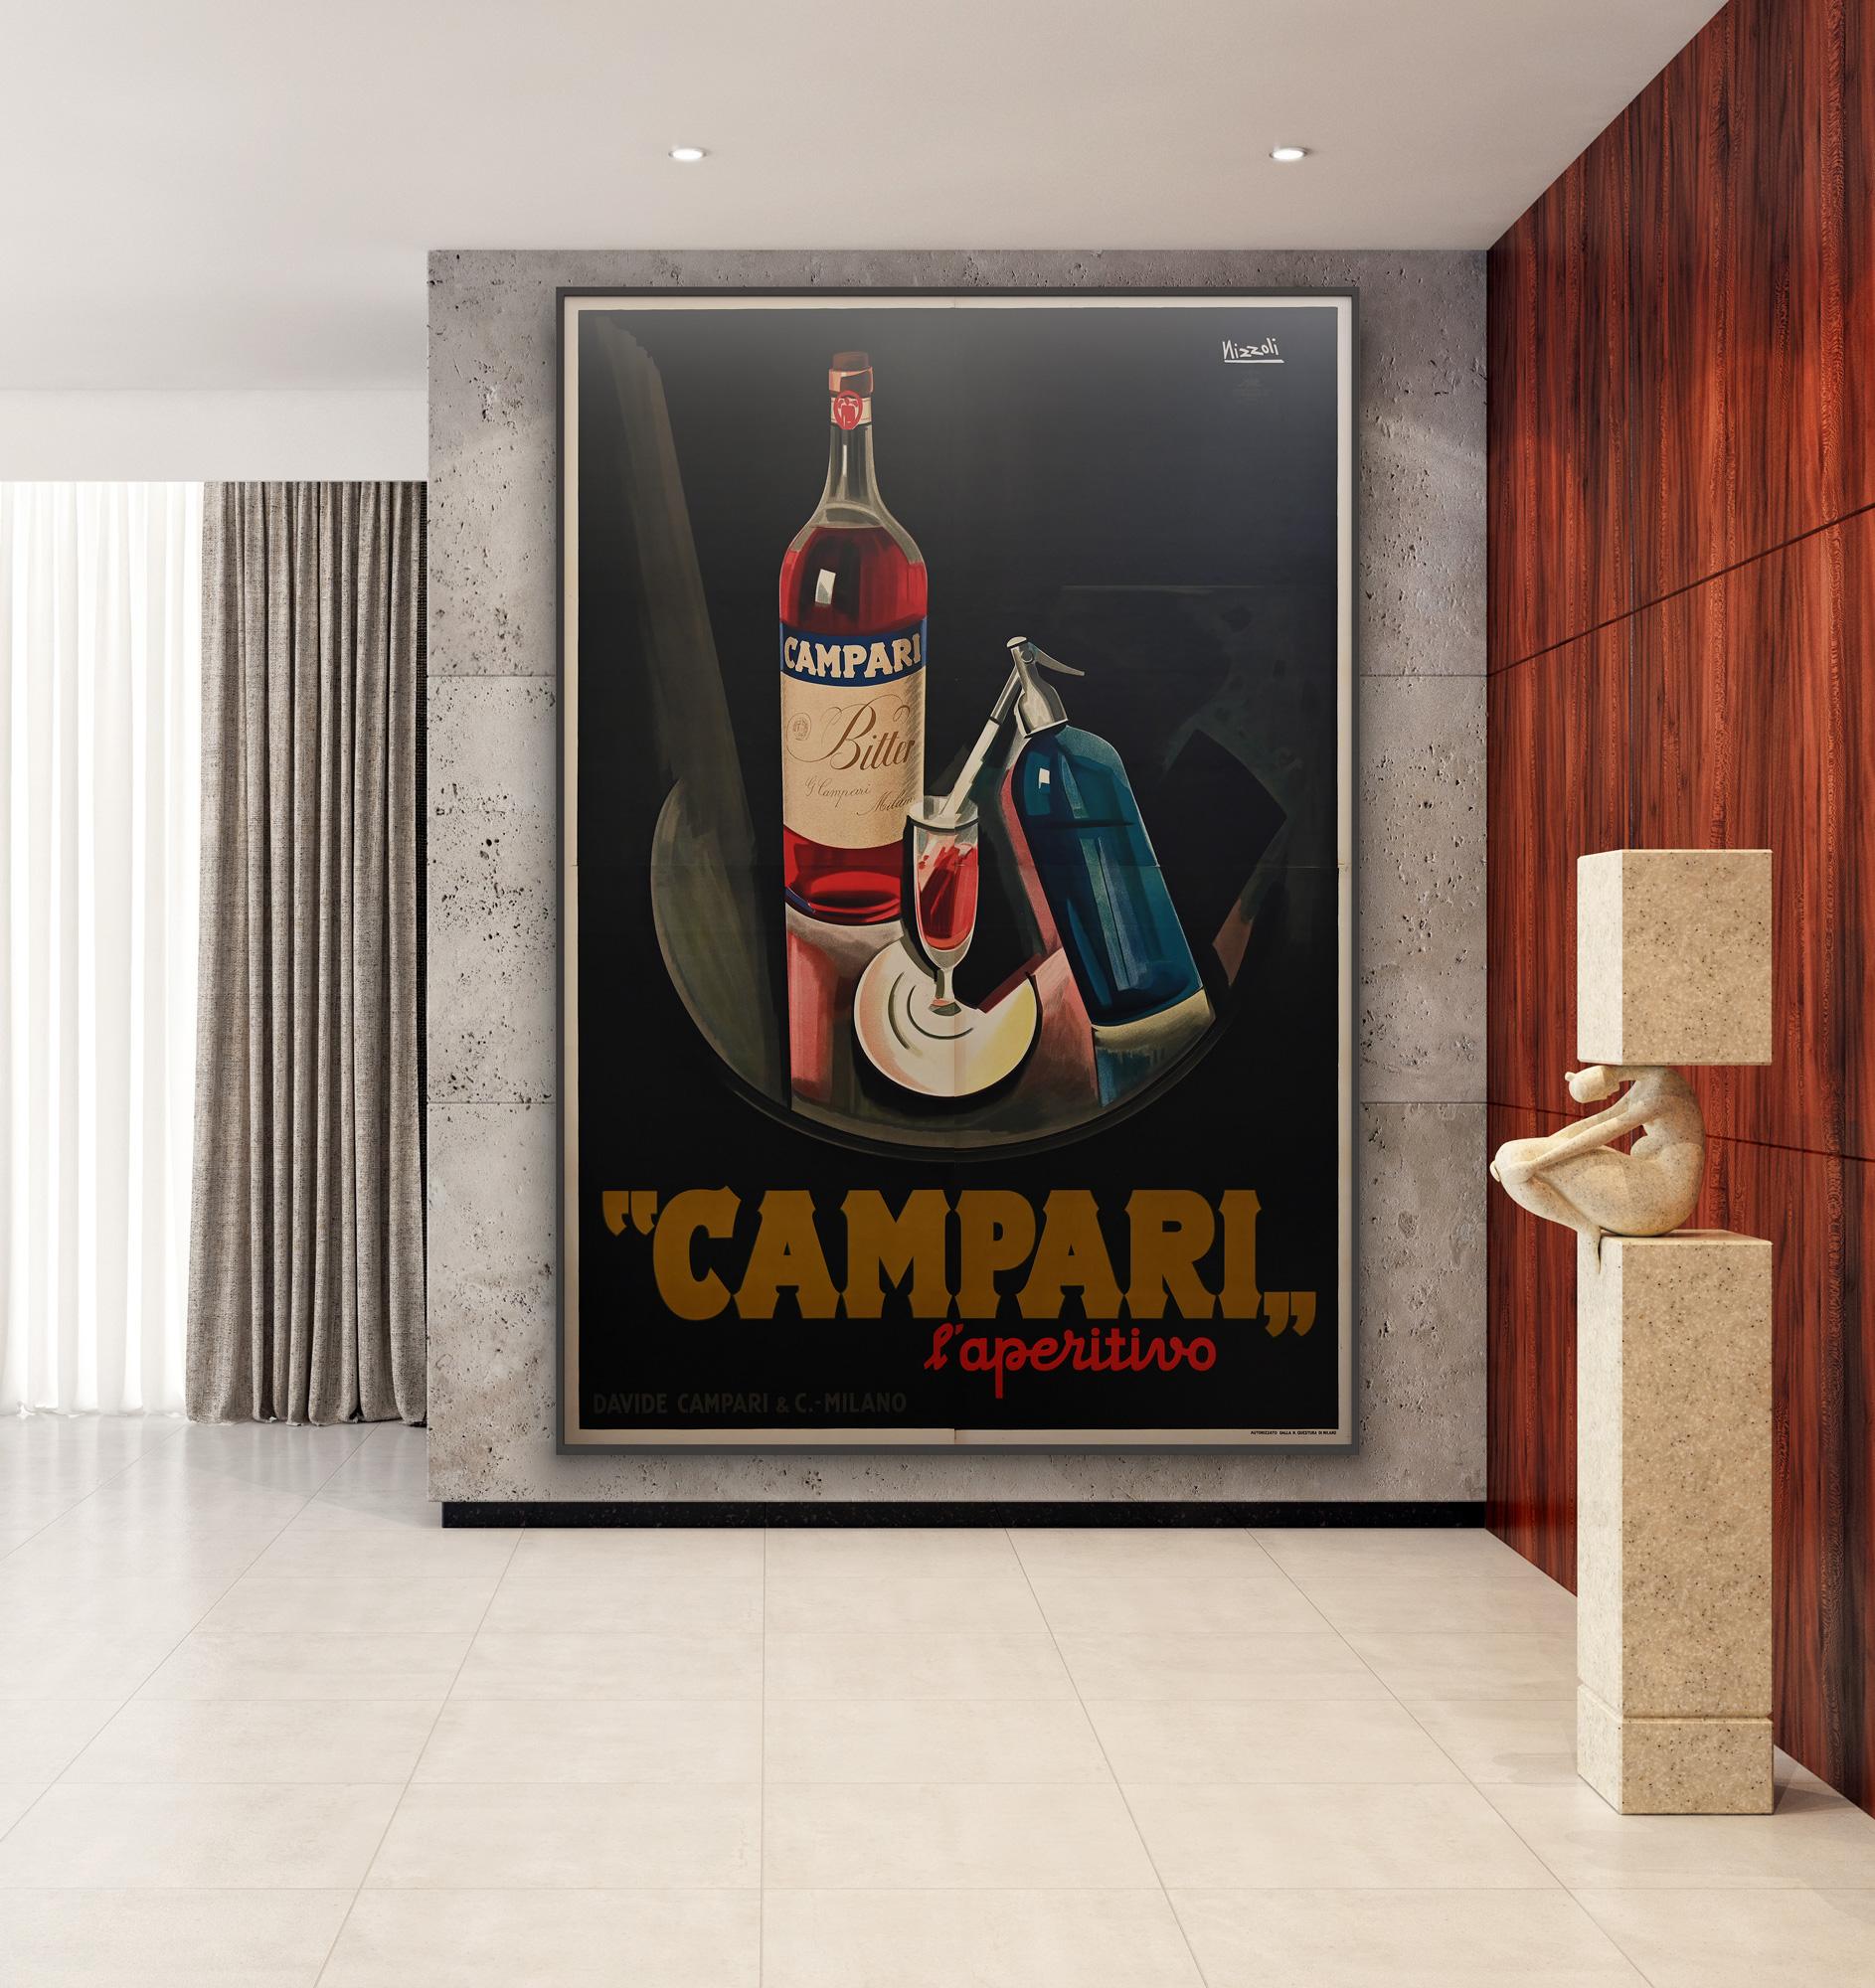 Fabuleuse affiche publicitaire italienne de 1926 pour Bitter Campari. Nous adorons le design saisissant de Marcello Nizzoli qui offre un impact Maximum sur cette affiche géante, la plus grande version de l'affiche jamais imprimée. Exceptionnellement